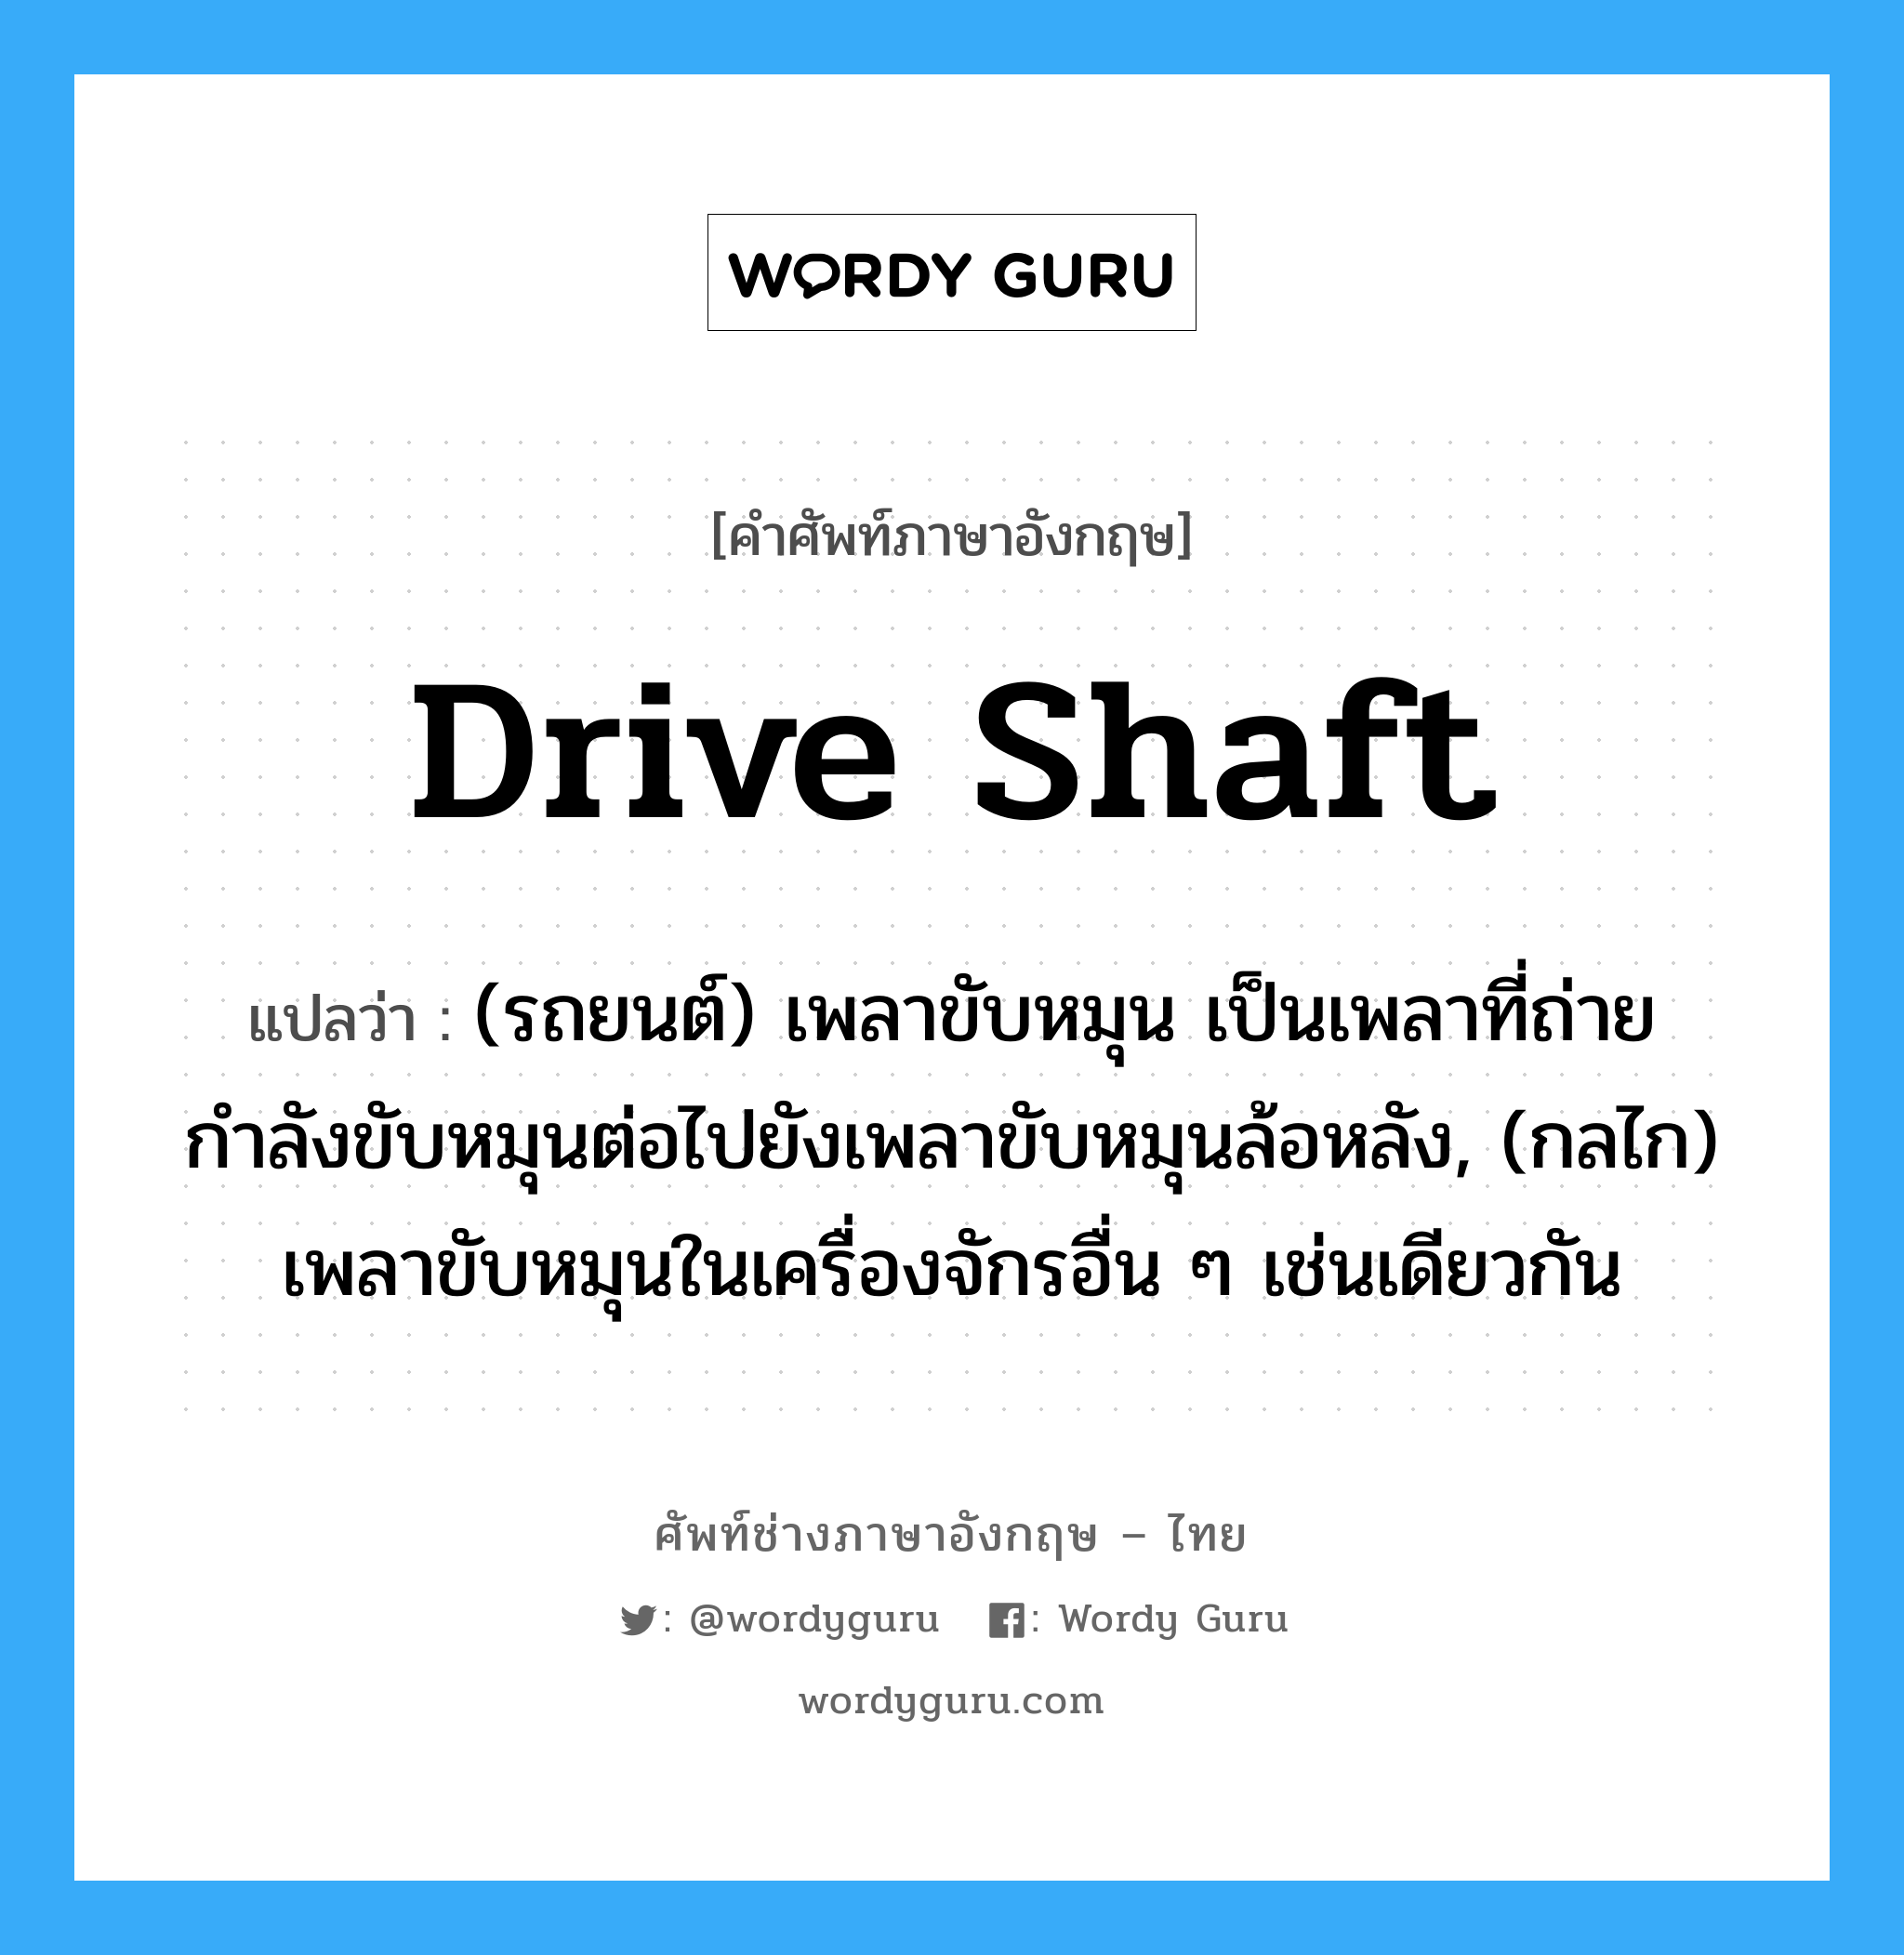 drive shaft แปลว่า?, คำศัพท์ช่างภาษาอังกฤษ - ไทย drive shaft คำศัพท์ภาษาอังกฤษ drive shaft แปลว่า (รถยนต์) เพลาขับหมุน เป็นเพลาที่ถ่ายกำลังขับหมุนต่อไปยังเพลาขับหมุนล้อหลัง, (กลไก) เพลาขับหมุนในเครื่องจักรอื่น ๆ เช่นเดียวกัน